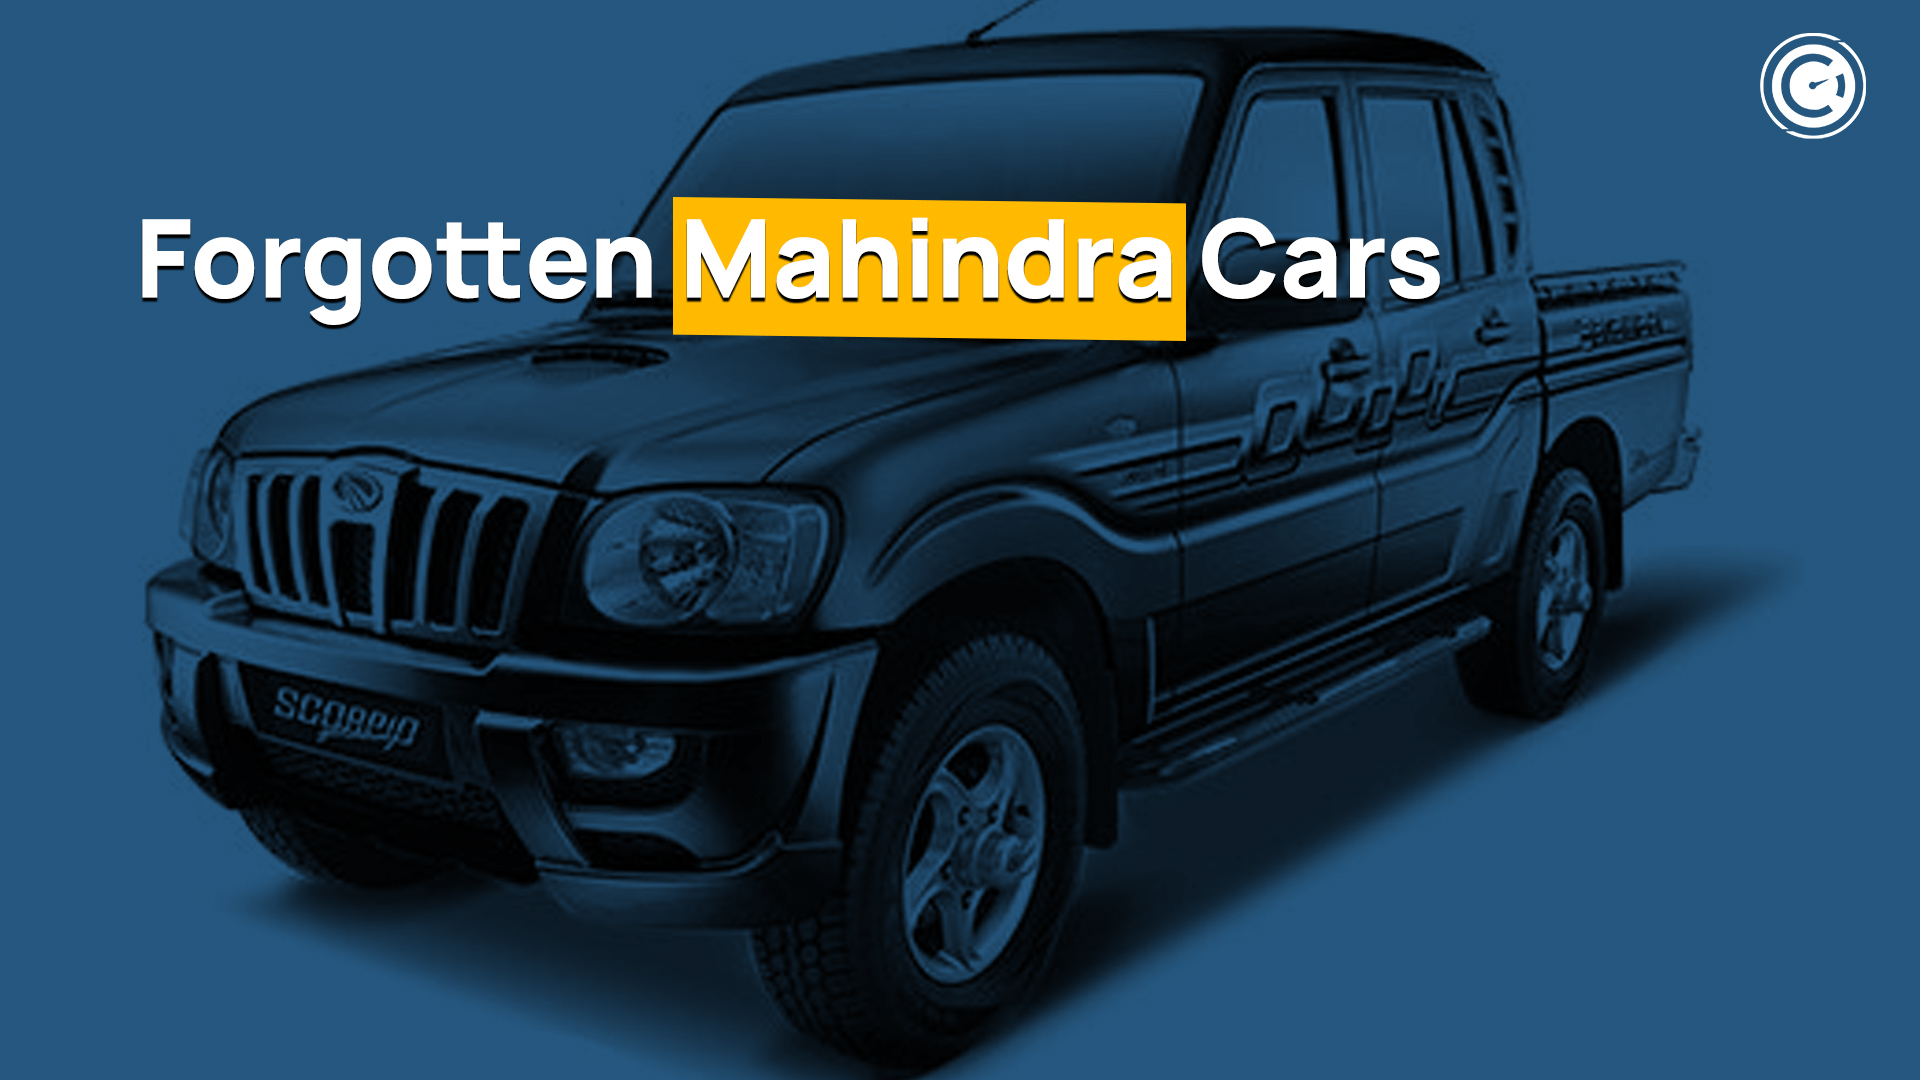 Forgotten Mahindra Cars